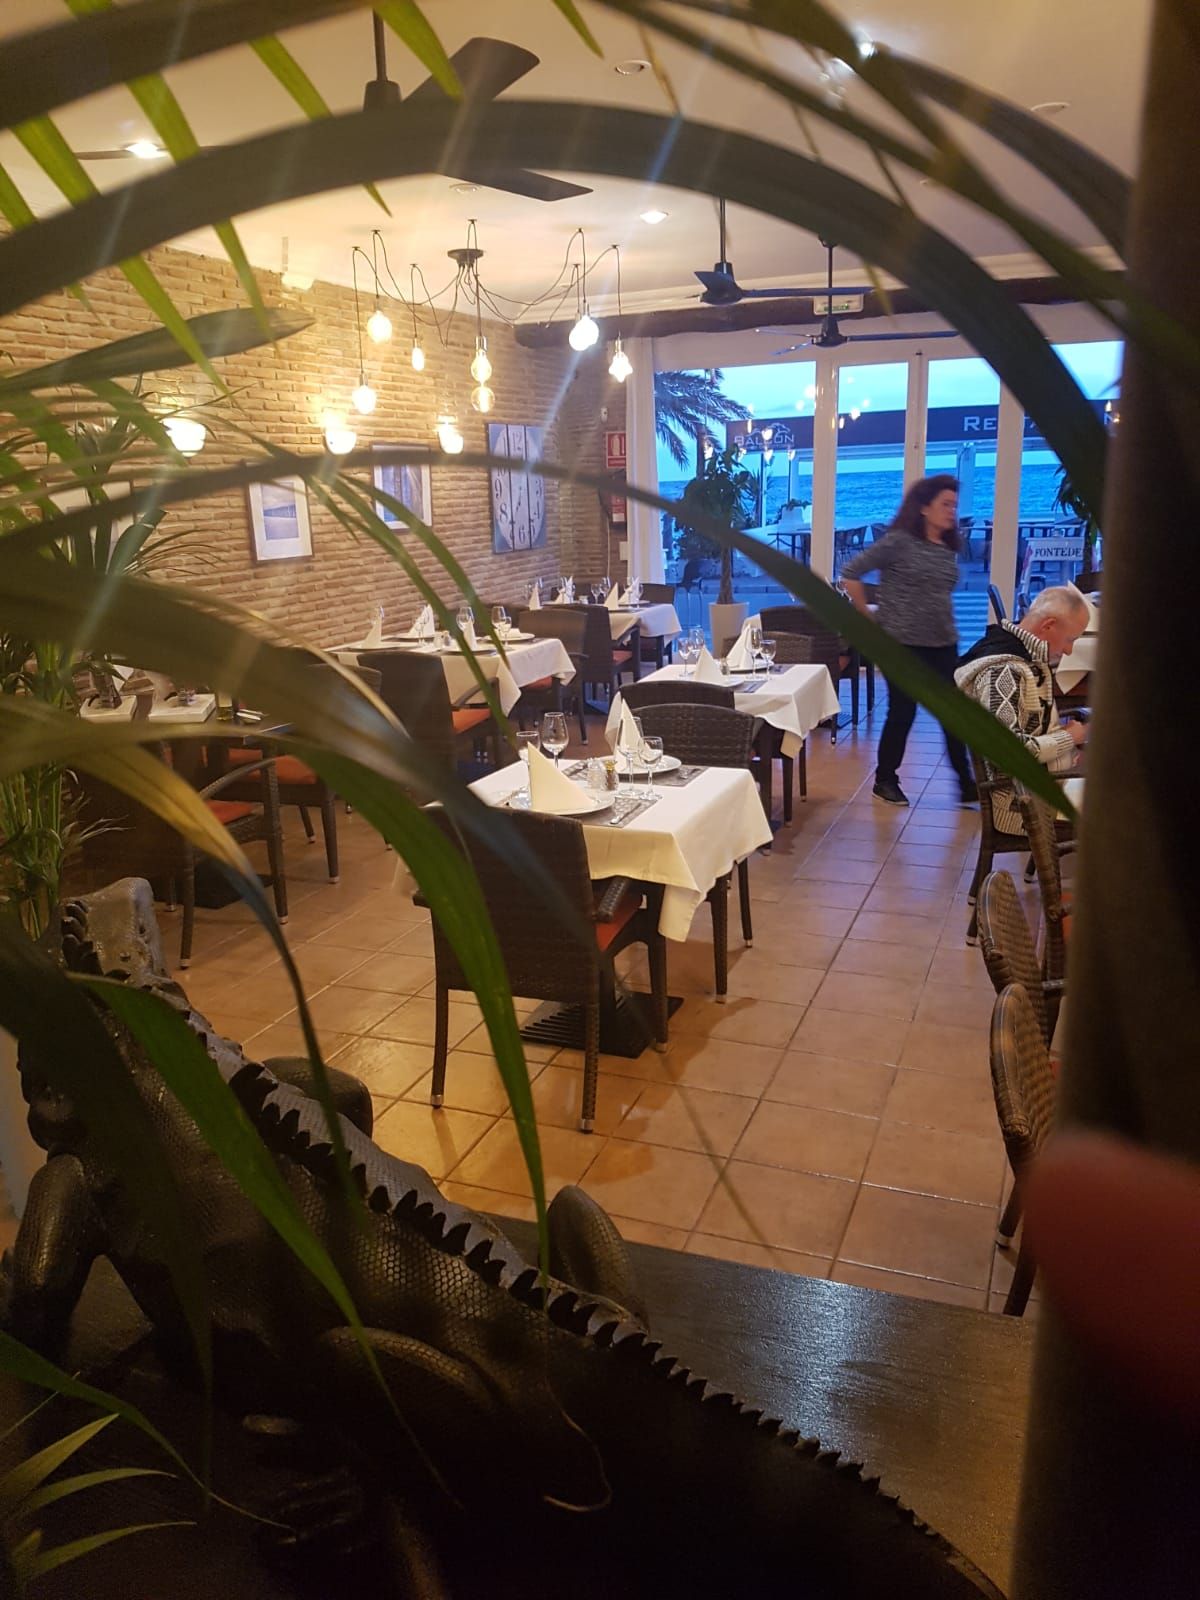 Foto 33 de Restaurante de cocina mediterránea en  | El Balcón de Cotobro